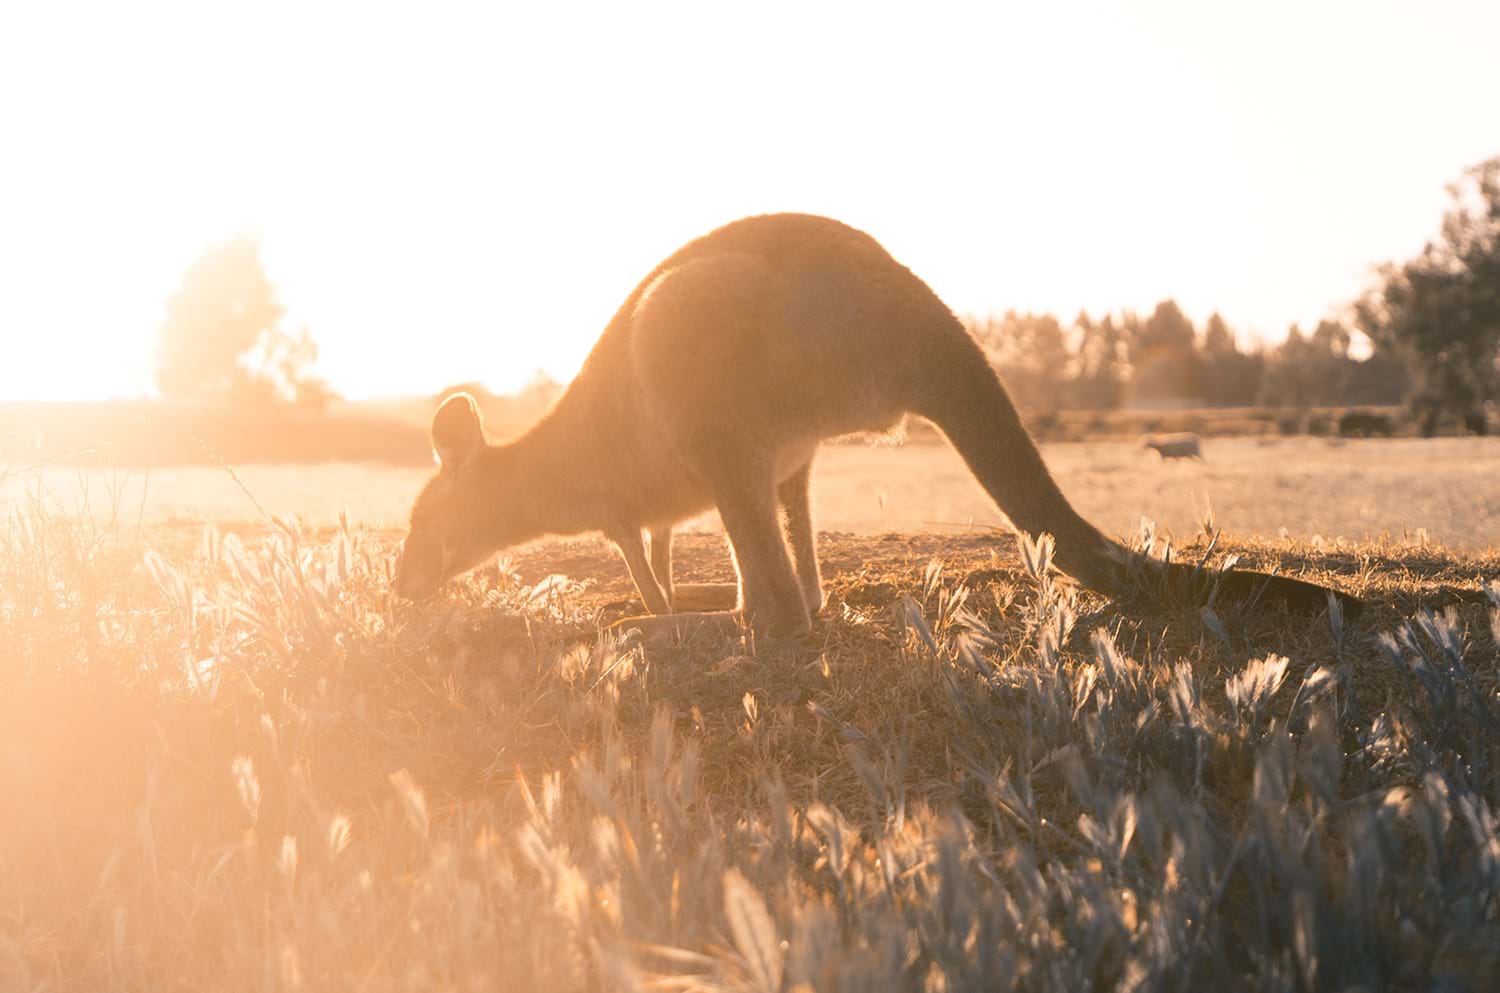 Kangaroo rooting through grass